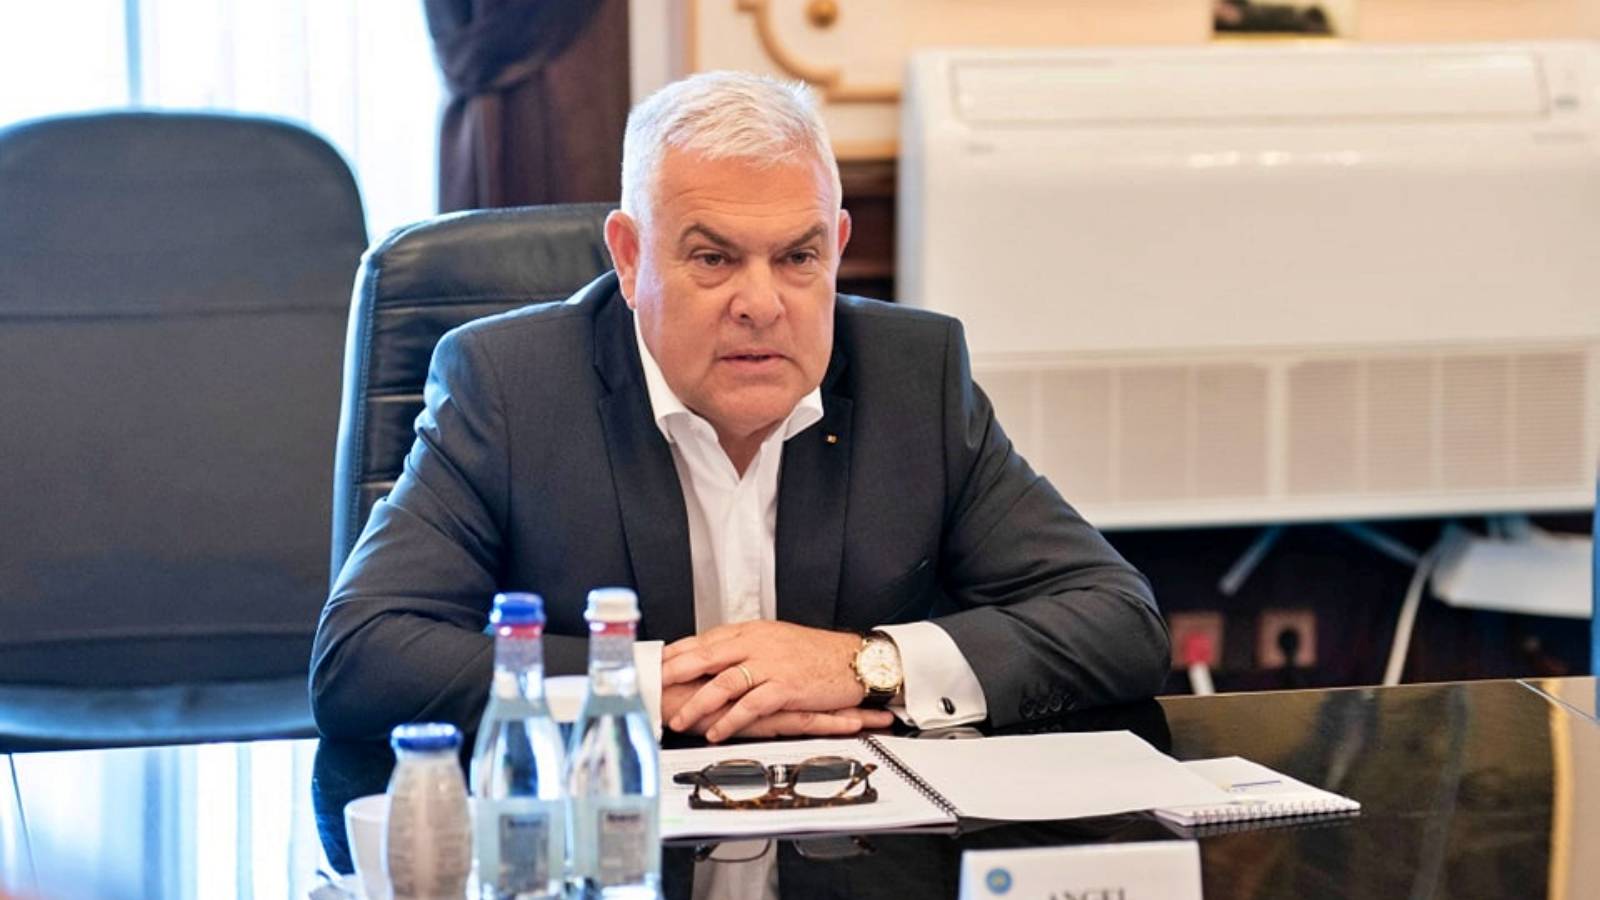 Verteidigungsminister 2 LETZTER MOMENT Information Rumänen voller Krieg Ukraine